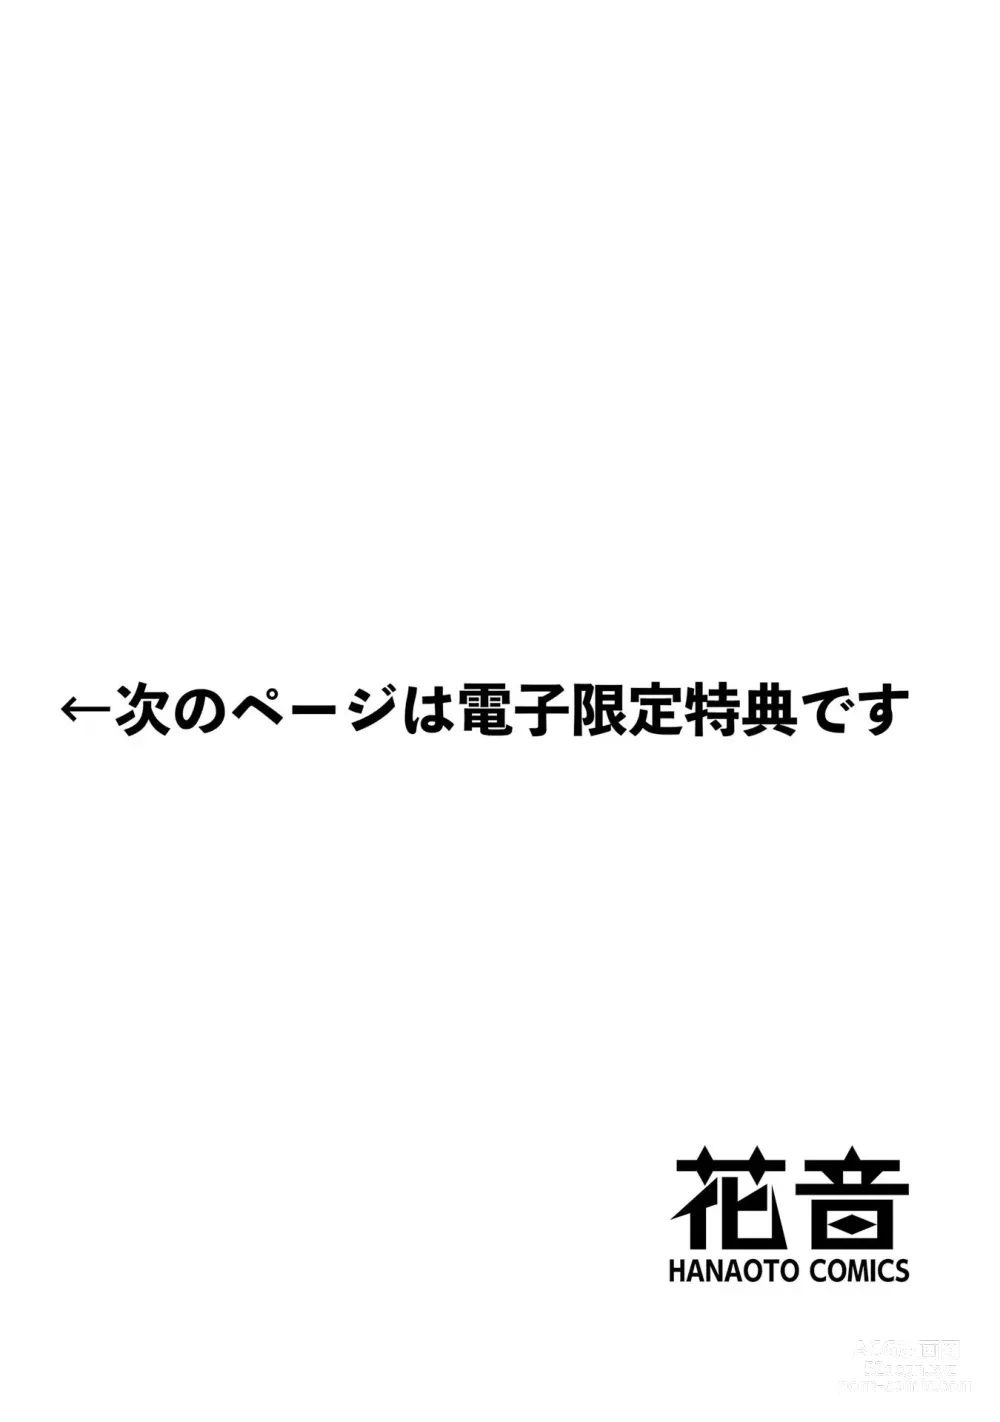 Page 235 of manga Hitoriyogari no Vanilla